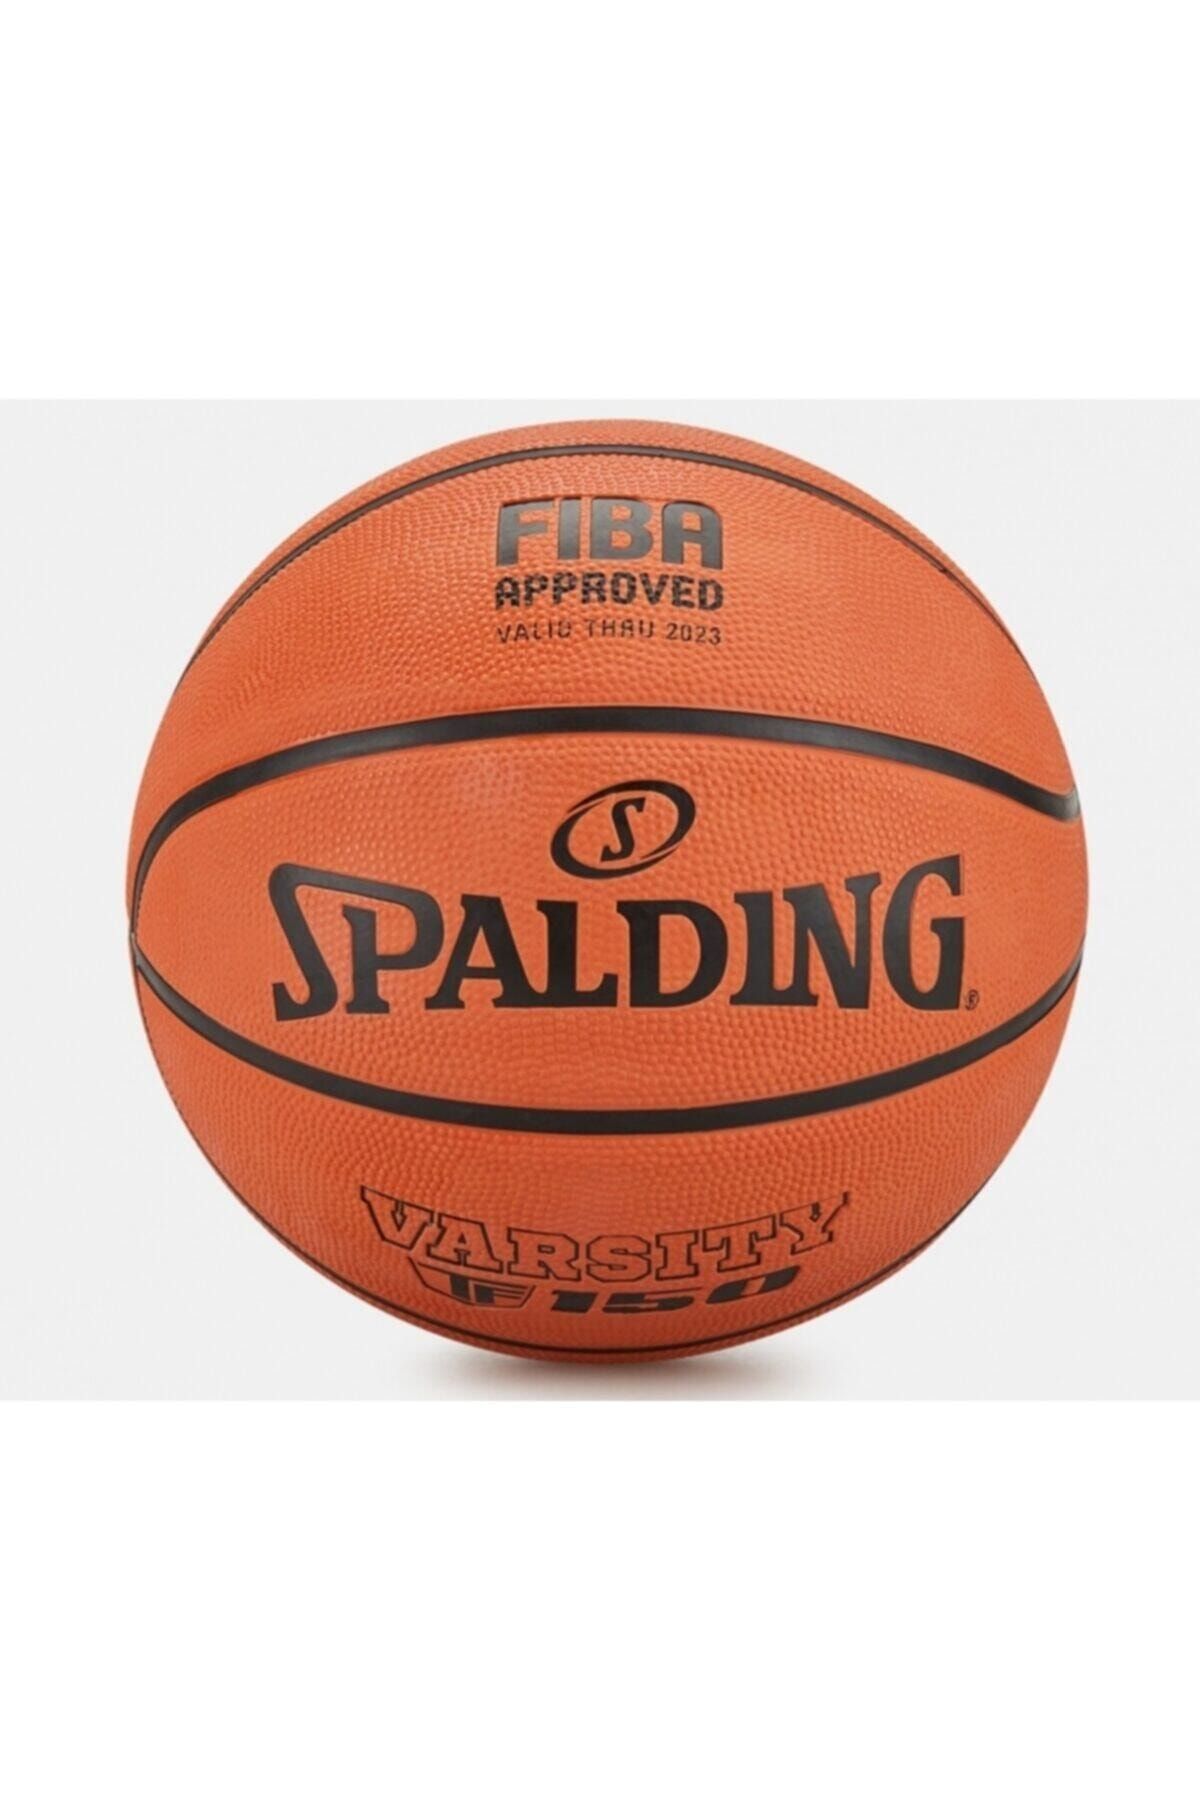 Spalding Tf-150 Basketbol Topu Varsity Size 7 Fiba Approved Onaylı